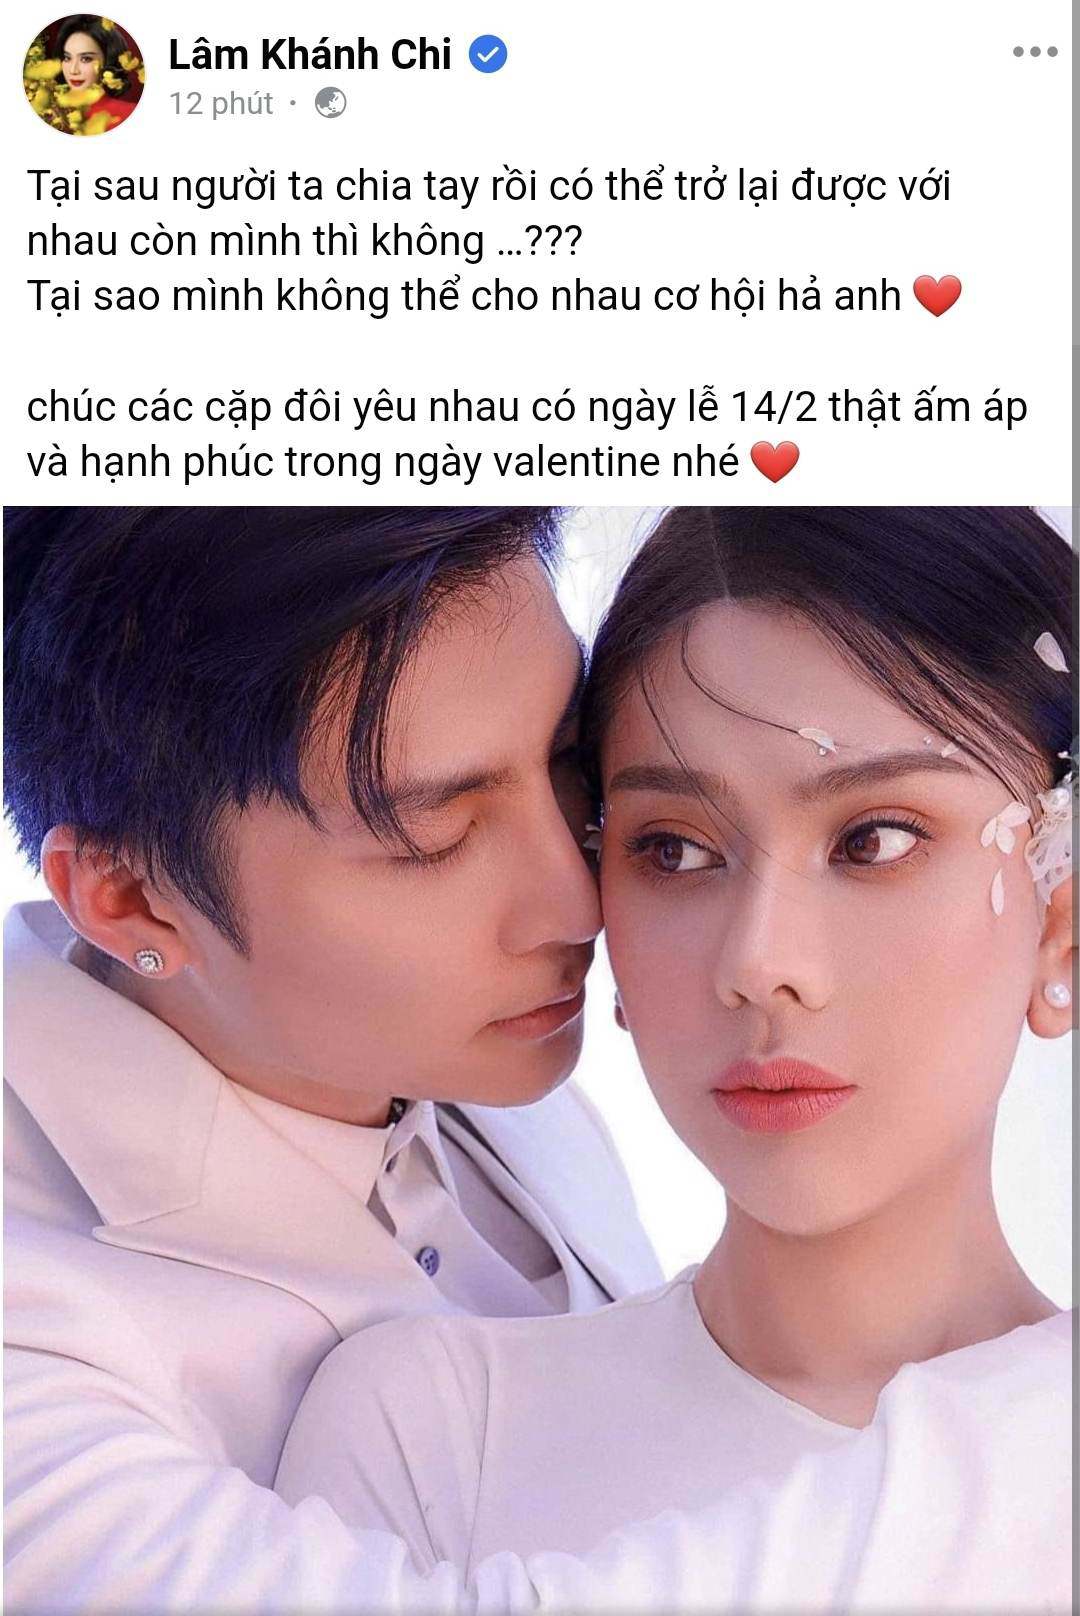 Valentine, sao Việt nhớ người xưa: Lâm Khánh Chi công khai níu kéo ...